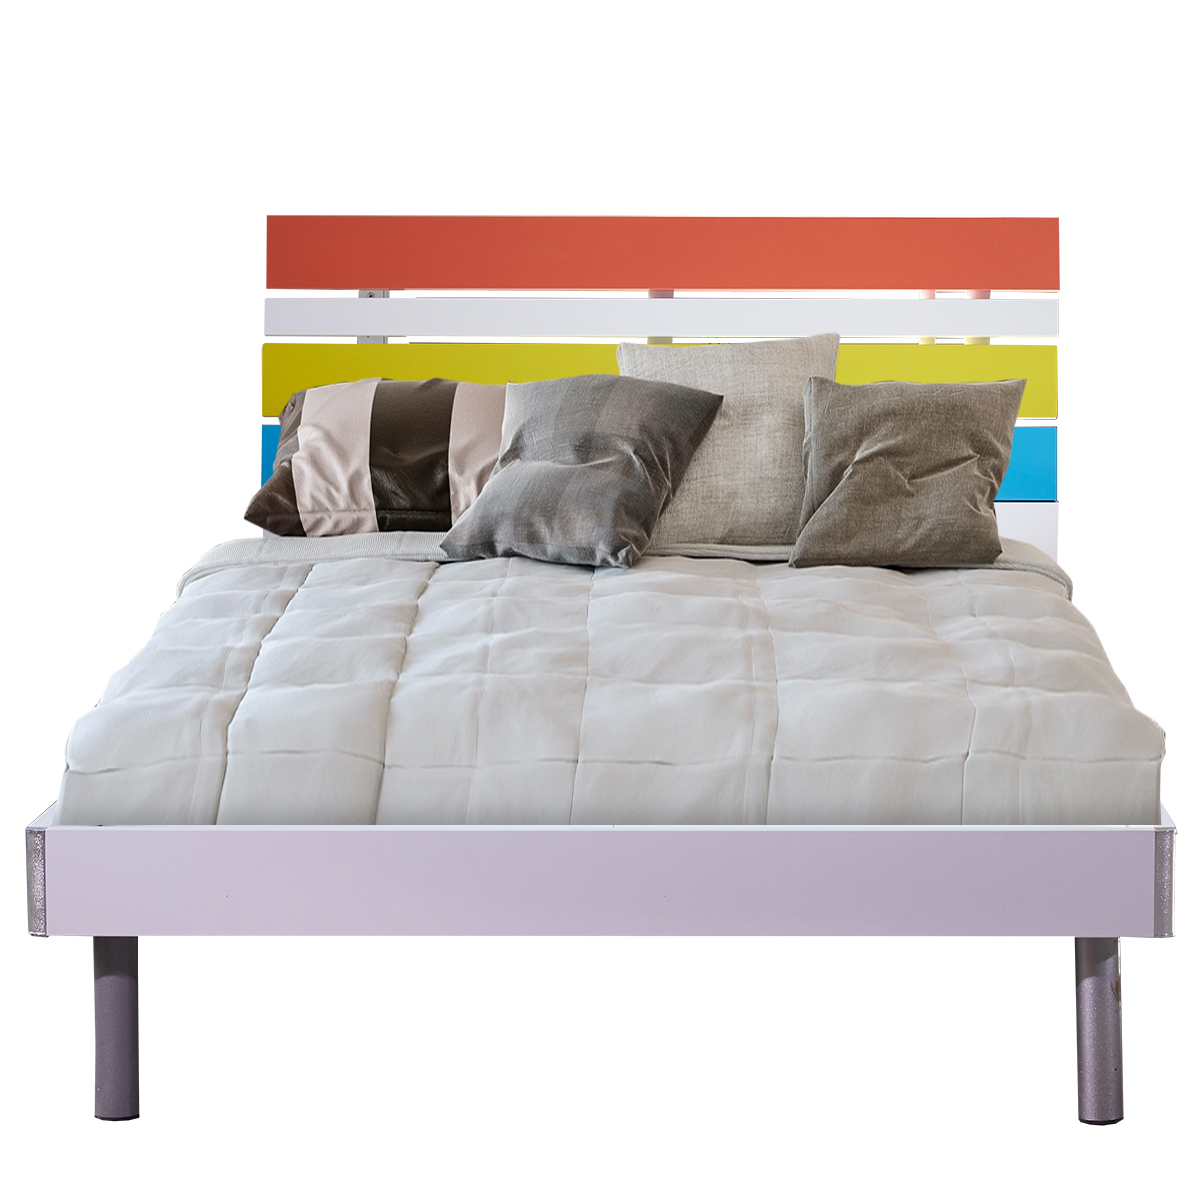 Κρεβάτι Παιδικό SWIFT Mdf Χρωματιστό 205x125x96cm